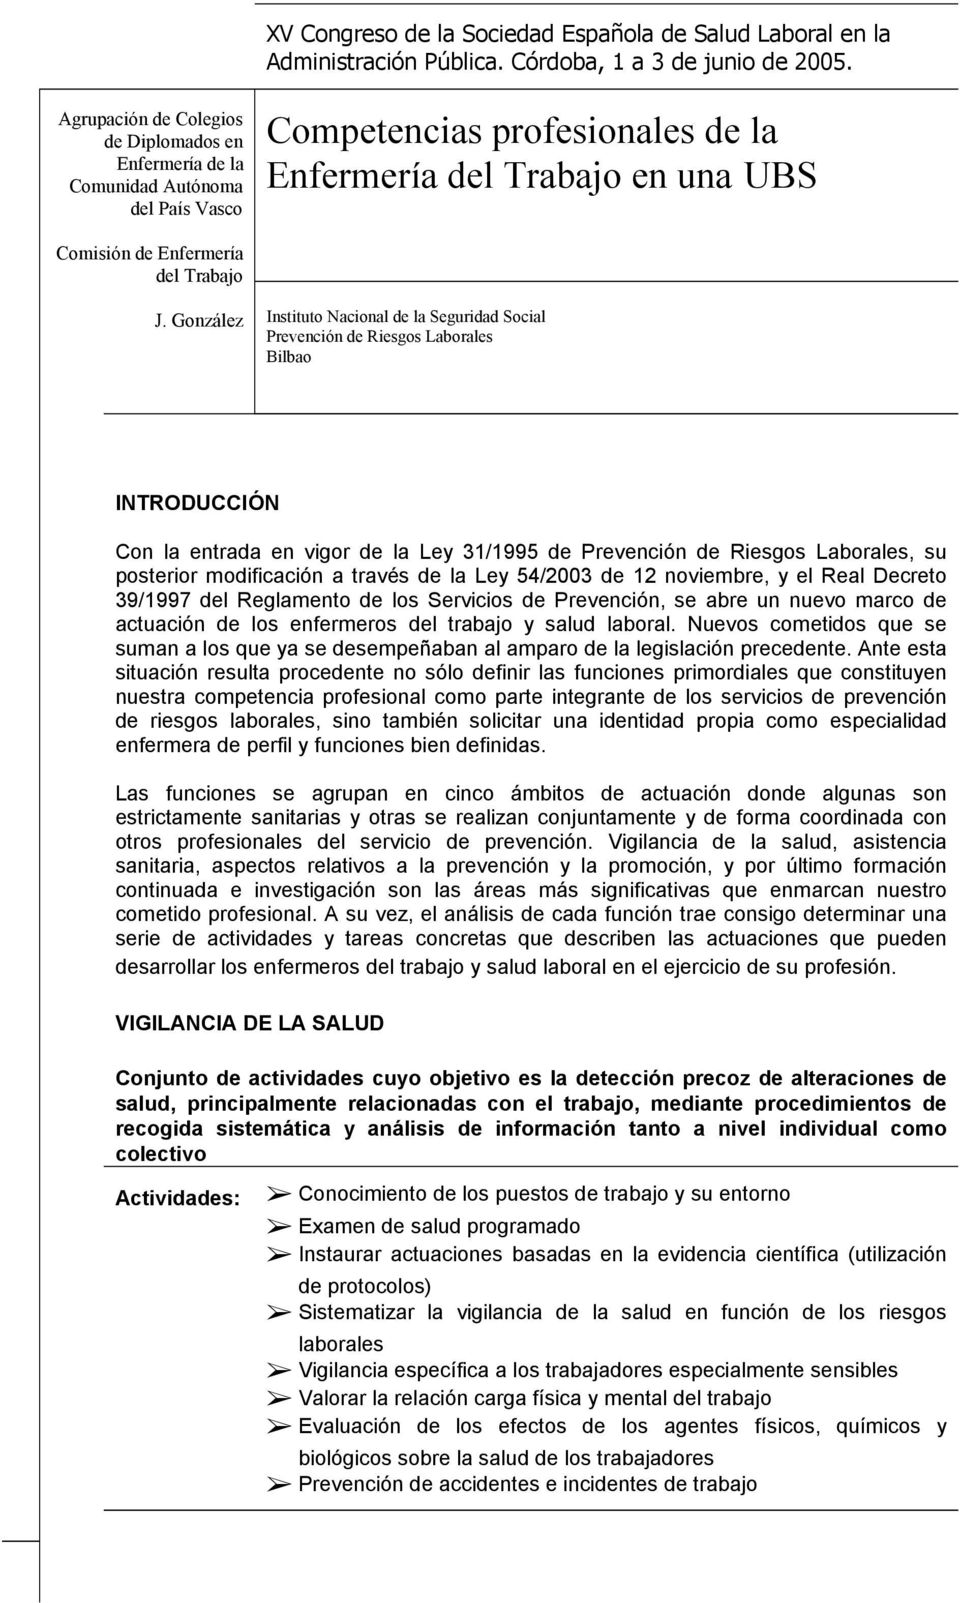 González Instituto Nacional de la Seguridad Social Prevención de Riesgos Laborales Bilbao INTRODUCCIÓN Con la entrada en vigor de la Ley 31/1995 de Prevención de Riesgos Laborales, su posterior